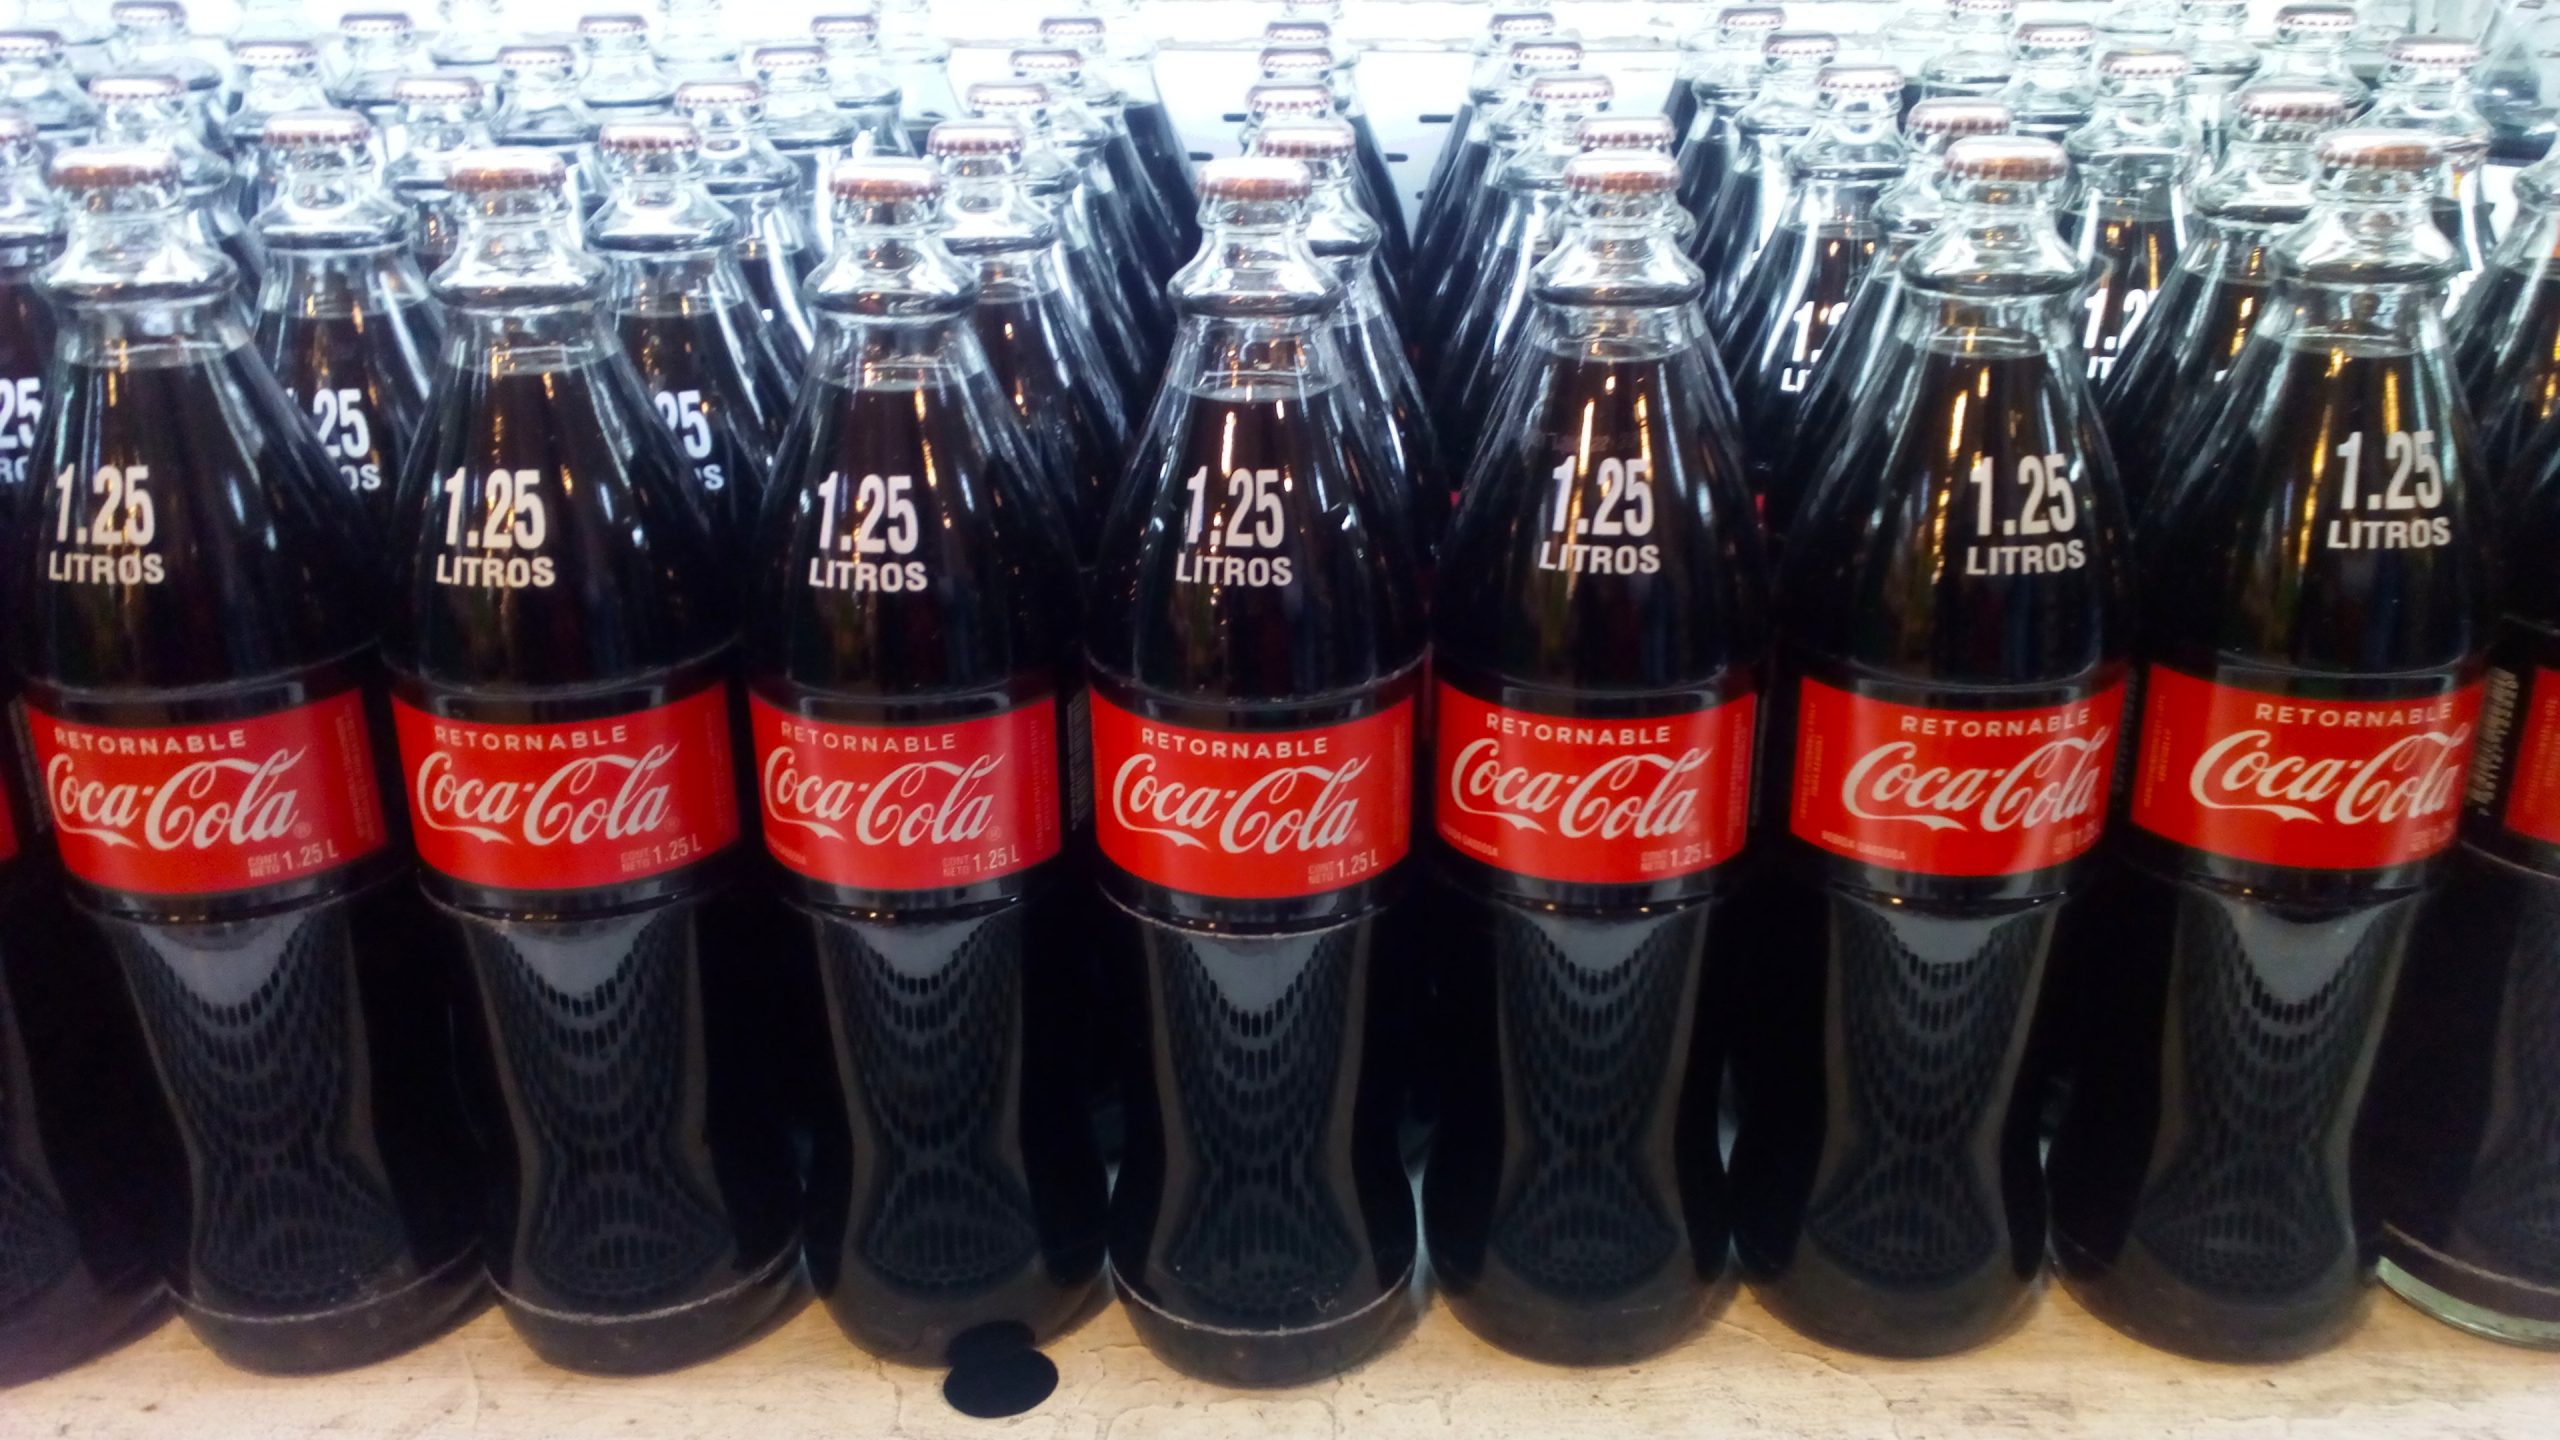 La Coca Cola en envase retornable ya no es tan económica